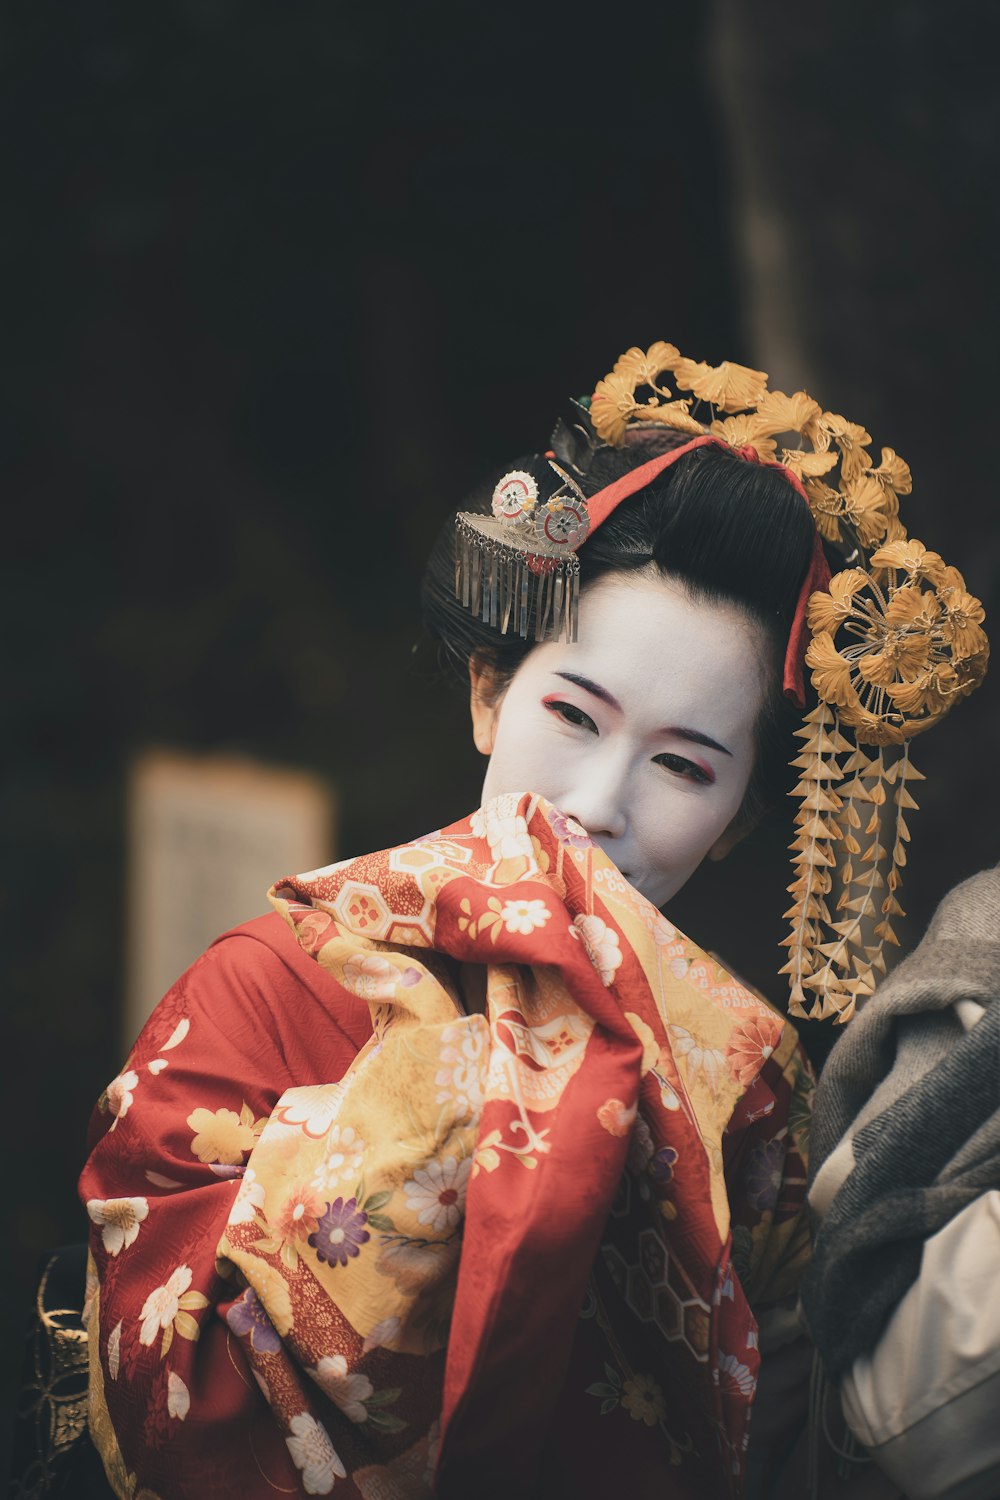 Una donna in un costume da geisha con un drago in testa foto – Giappone  Immagine gratuita su Unsplash